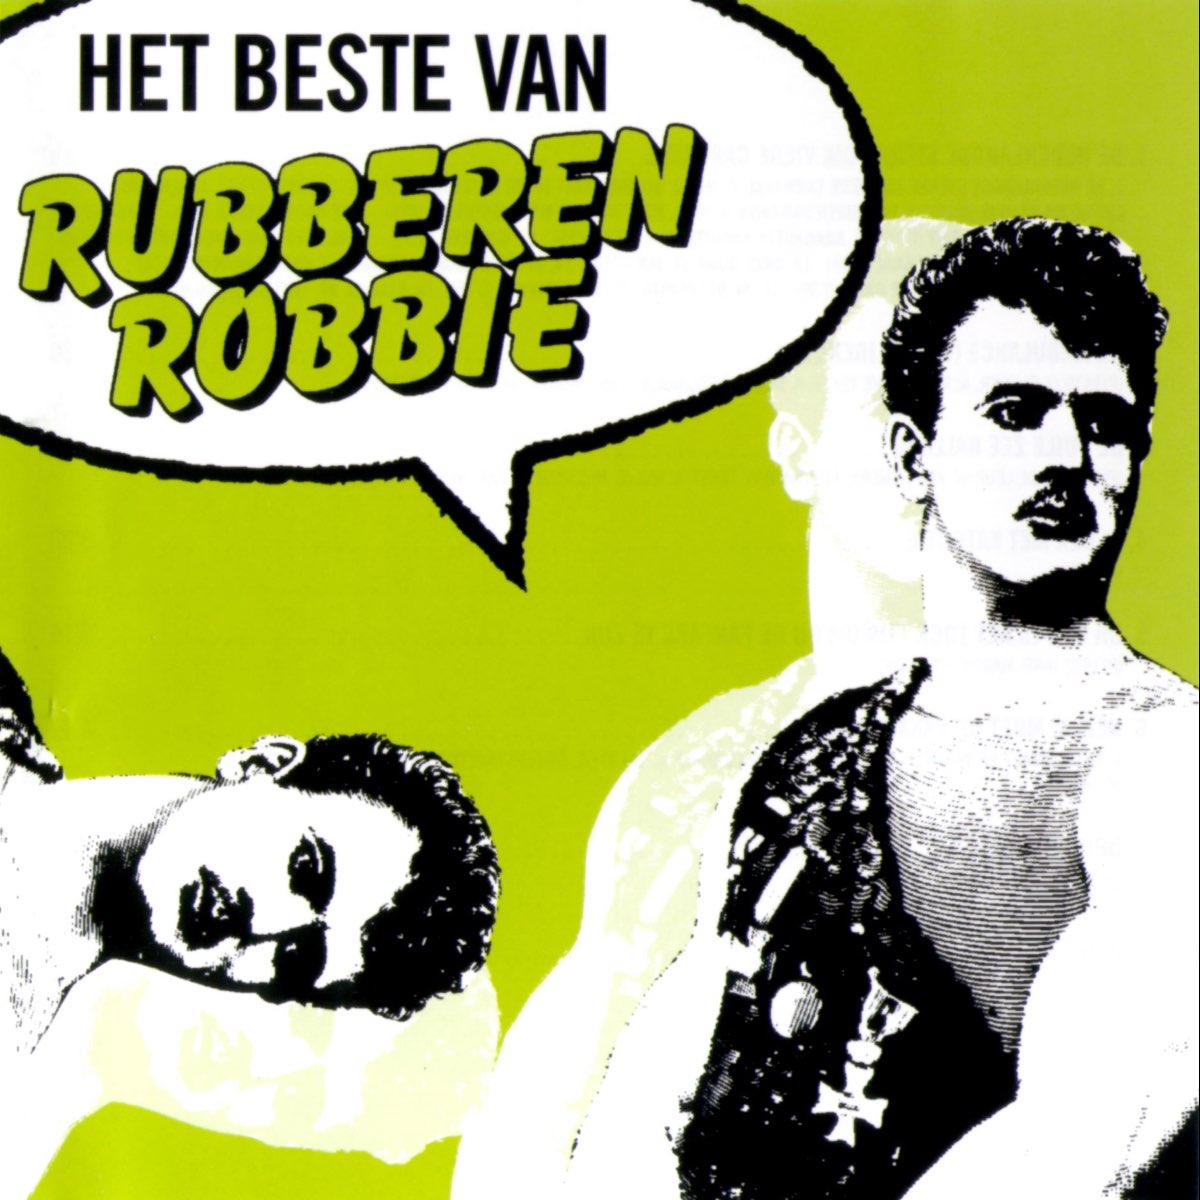 Het beste van Rubberen Robbie - Album van Rubberen Robbie - Apple Music